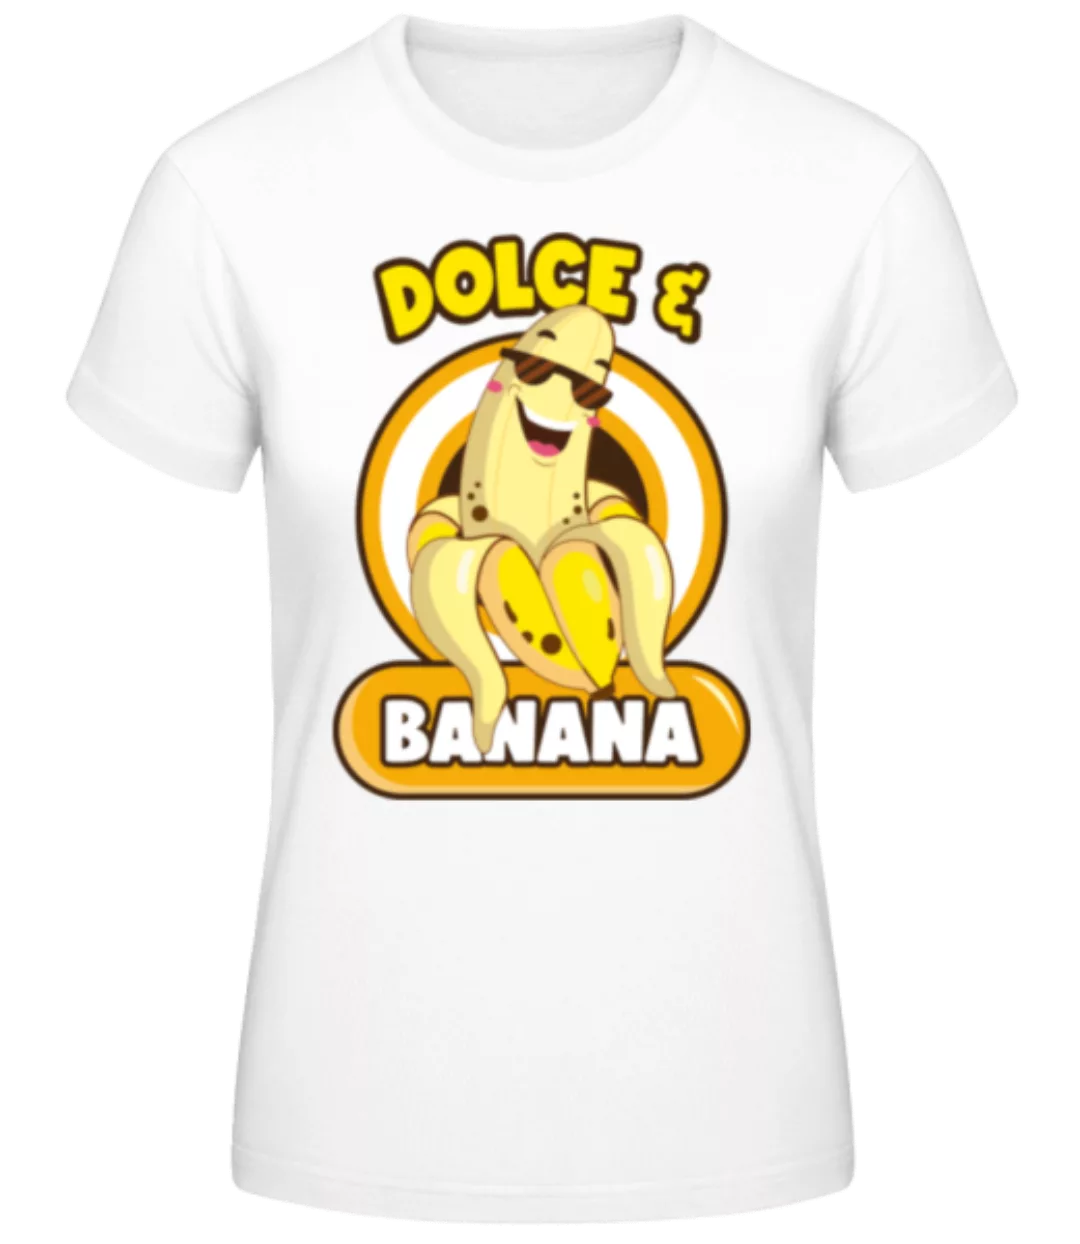 Dolce & Banana · Frauen Basic T-Shirt günstig online kaufen